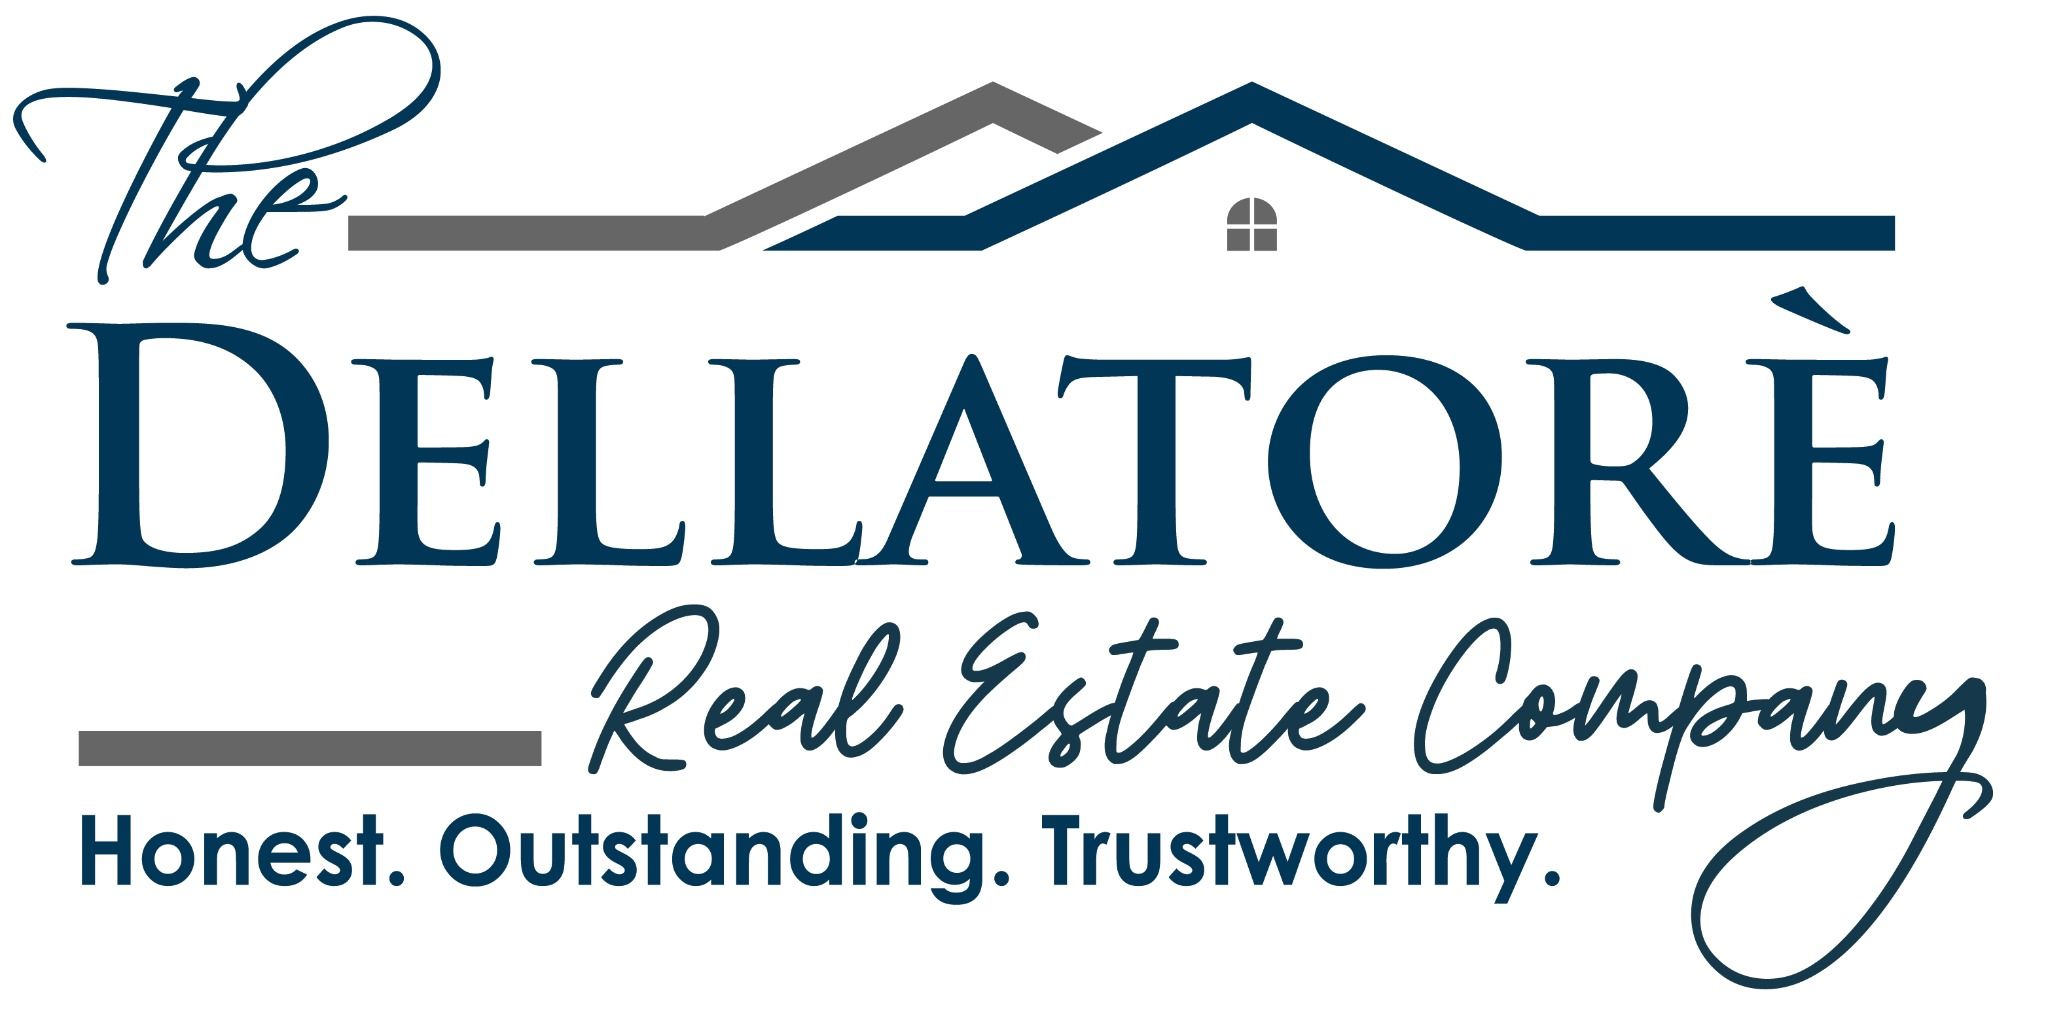 The Dellatore Real Estate Company